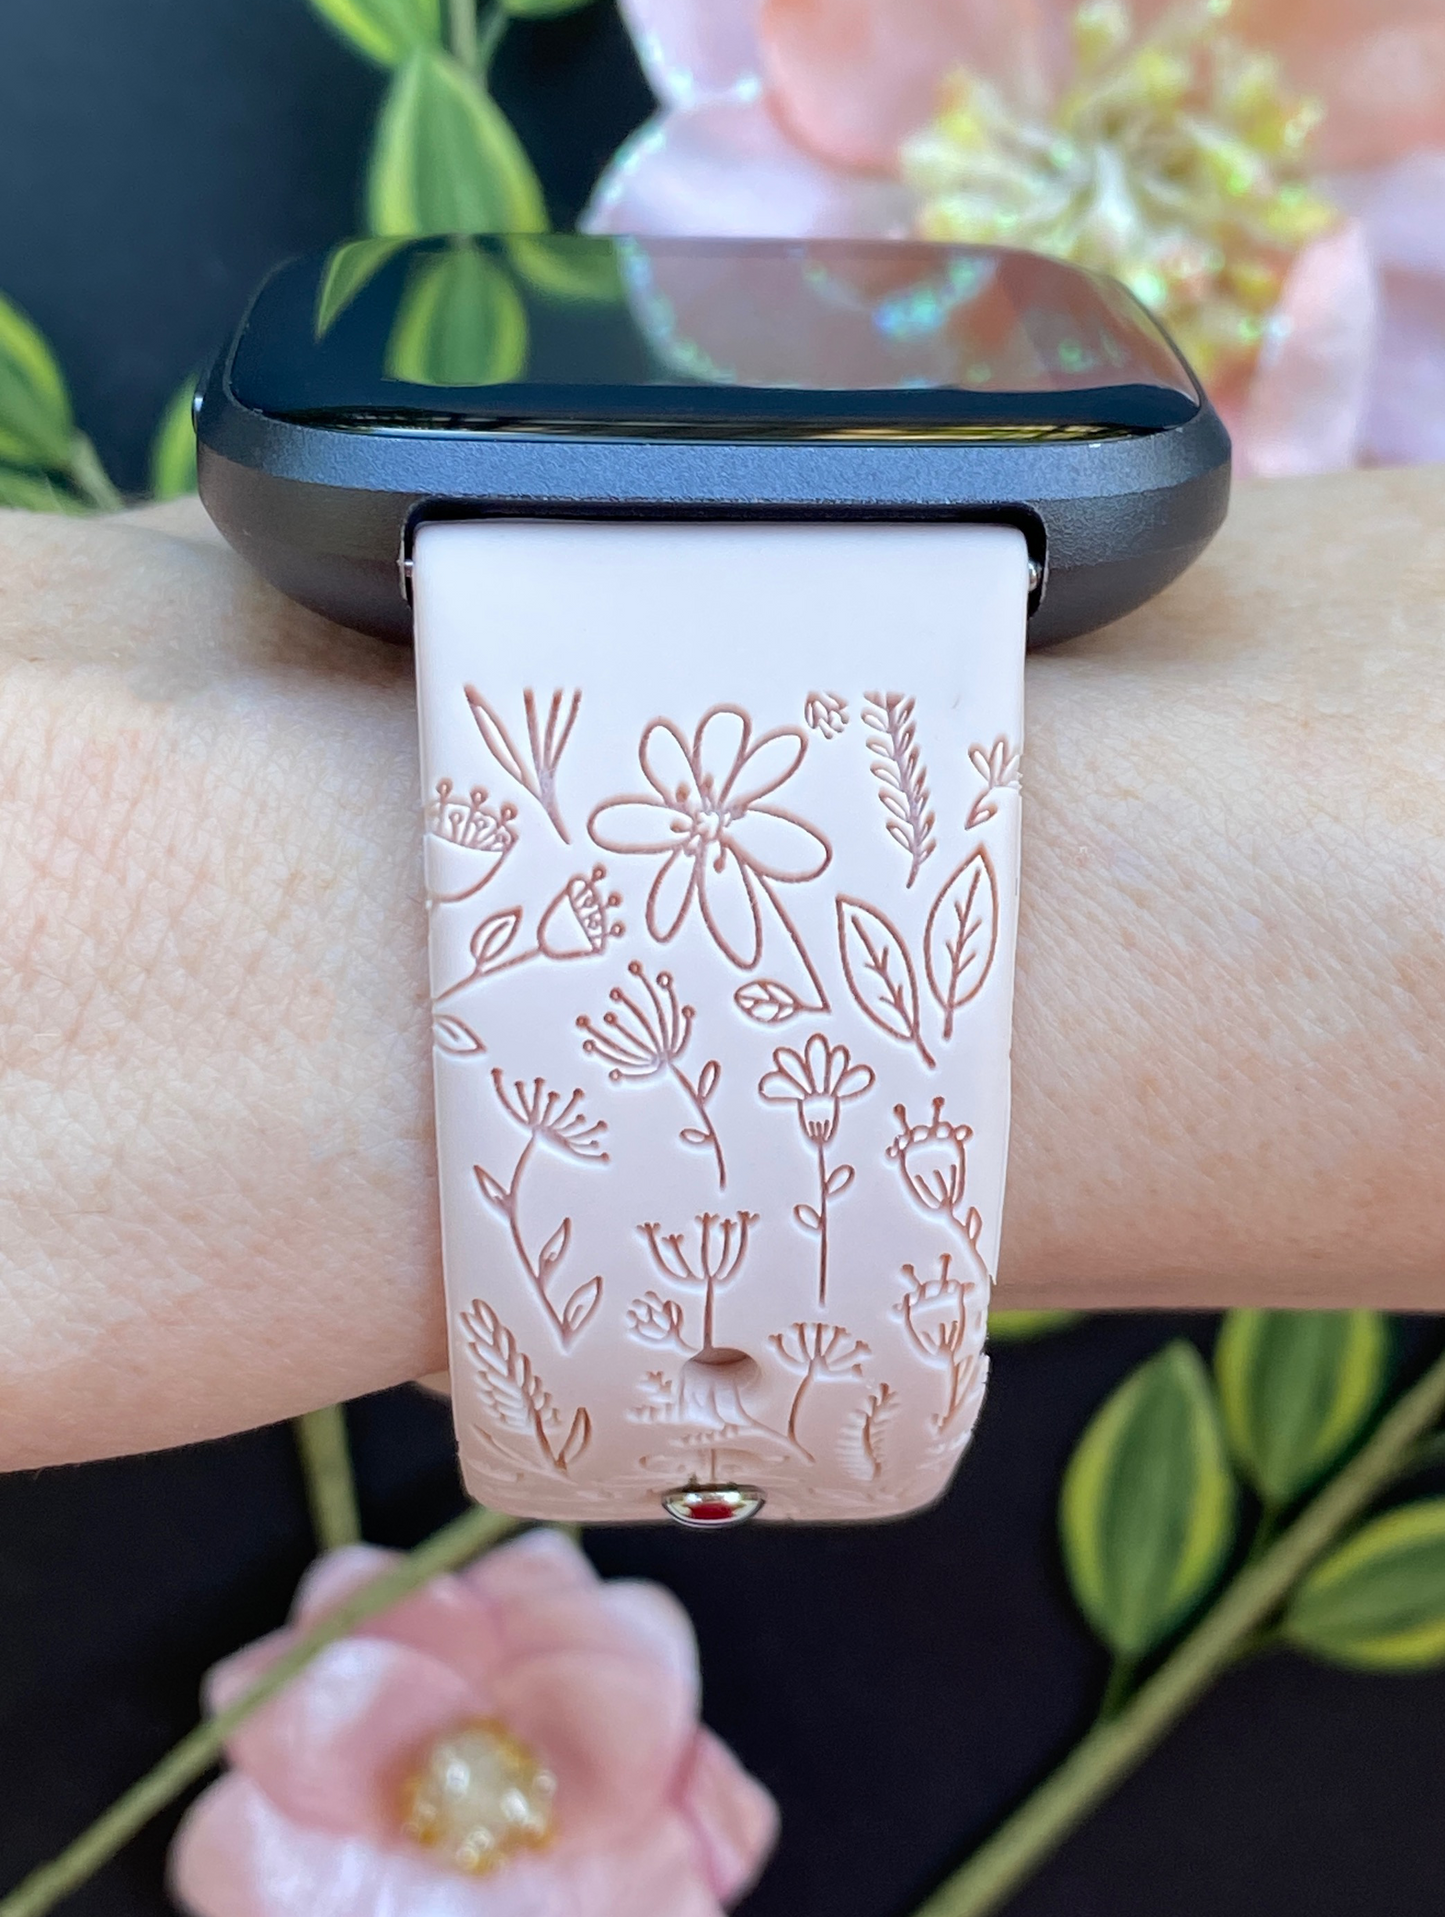 Flower Lover Fitbit Versa 1/2 Watch Band